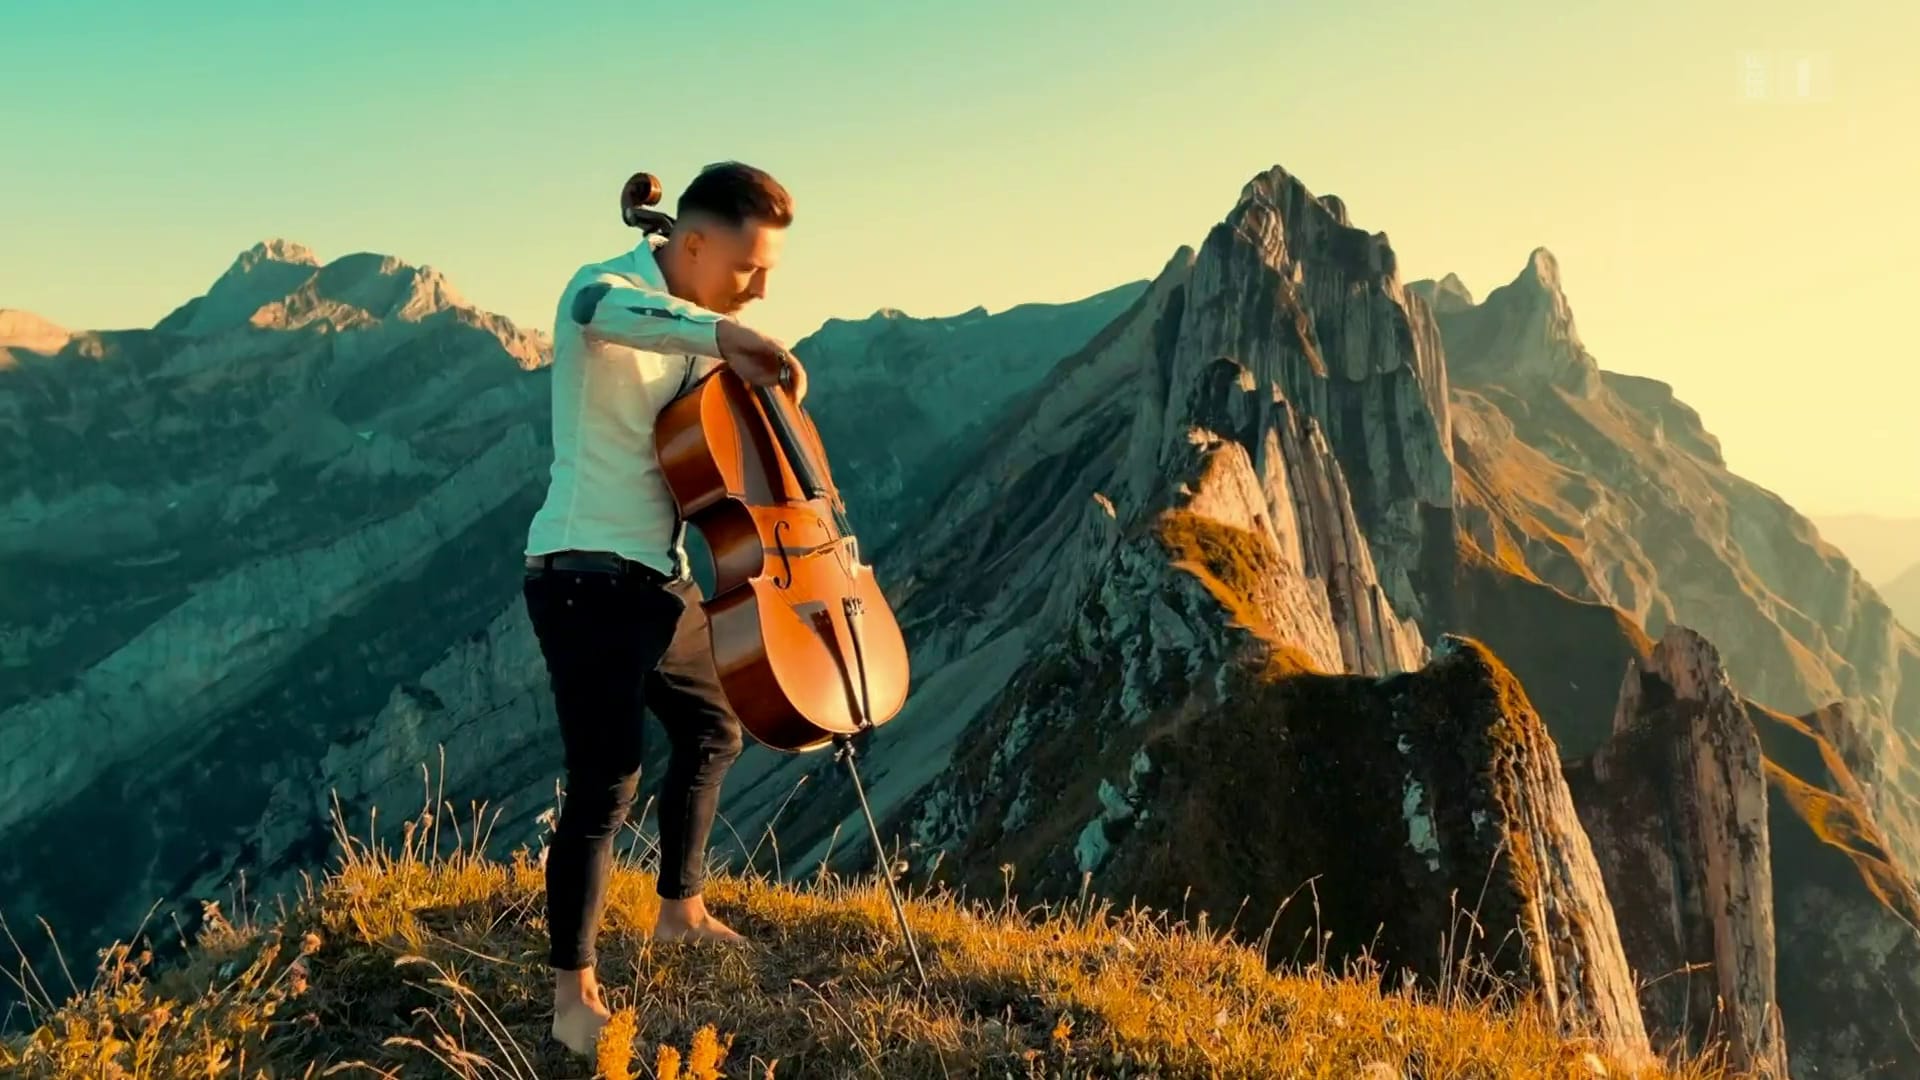 De beaux endroits dans la nature, ses pieds nus et son violoncelle: c'est ainsi que Jodok Vuille a gagné un public de plusieurs millions de personnes.